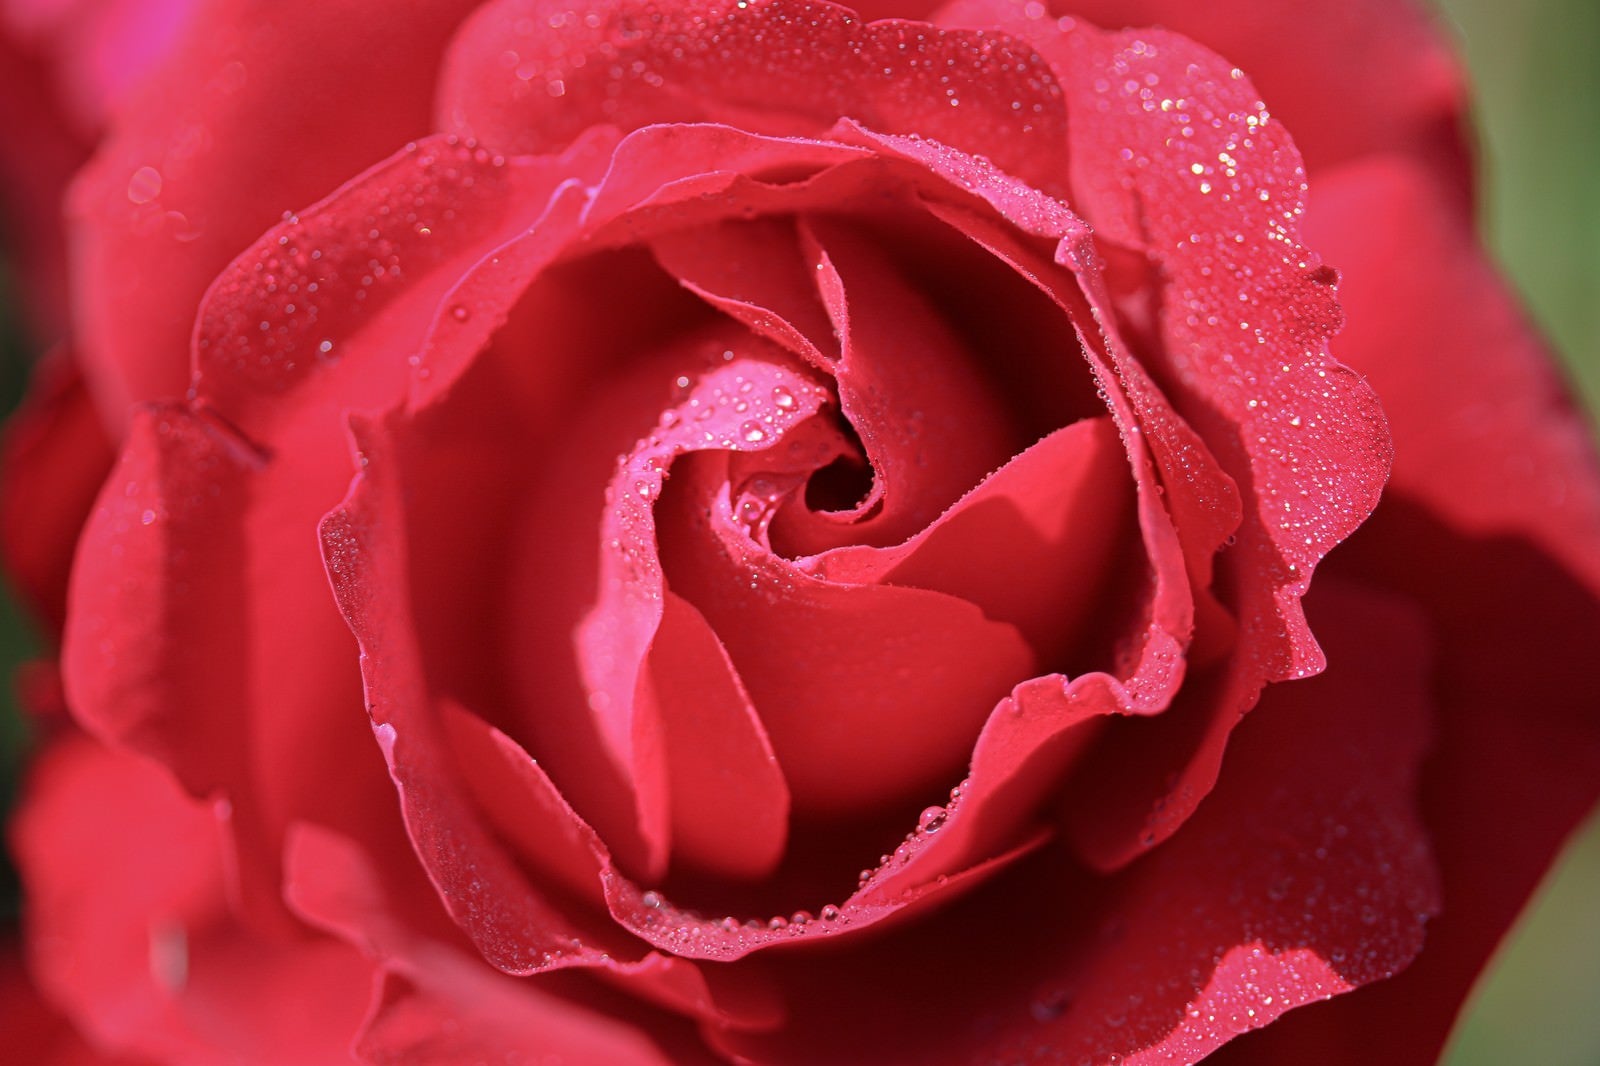 「朝露残る赤い薔薇」の写真